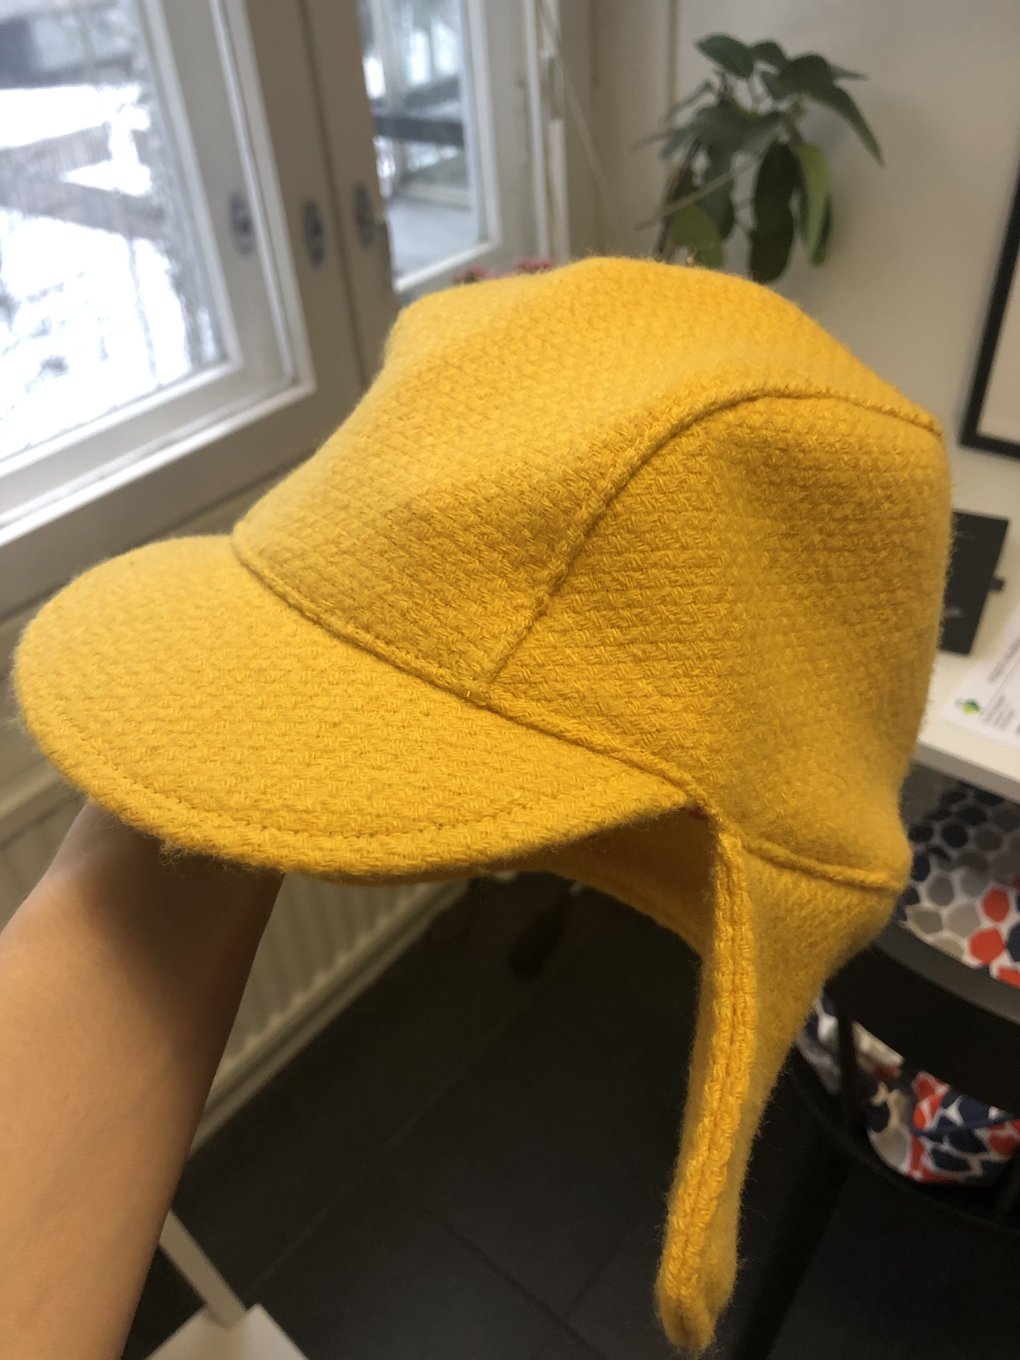 Yellow hat.